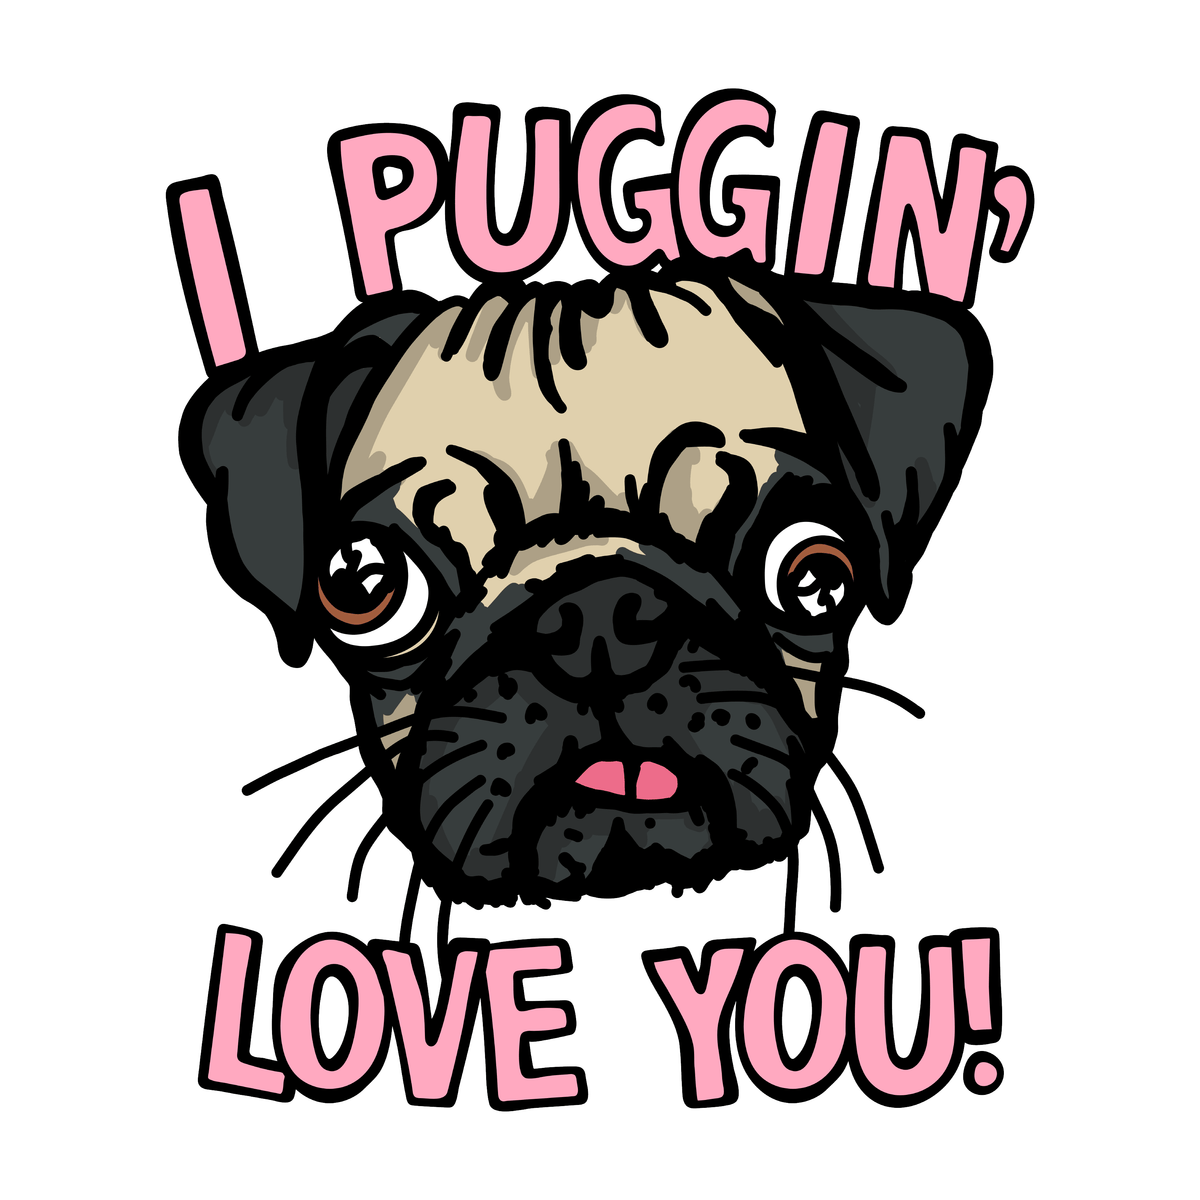 Puggin Love you 🐶❣️ - Women's T Shirt